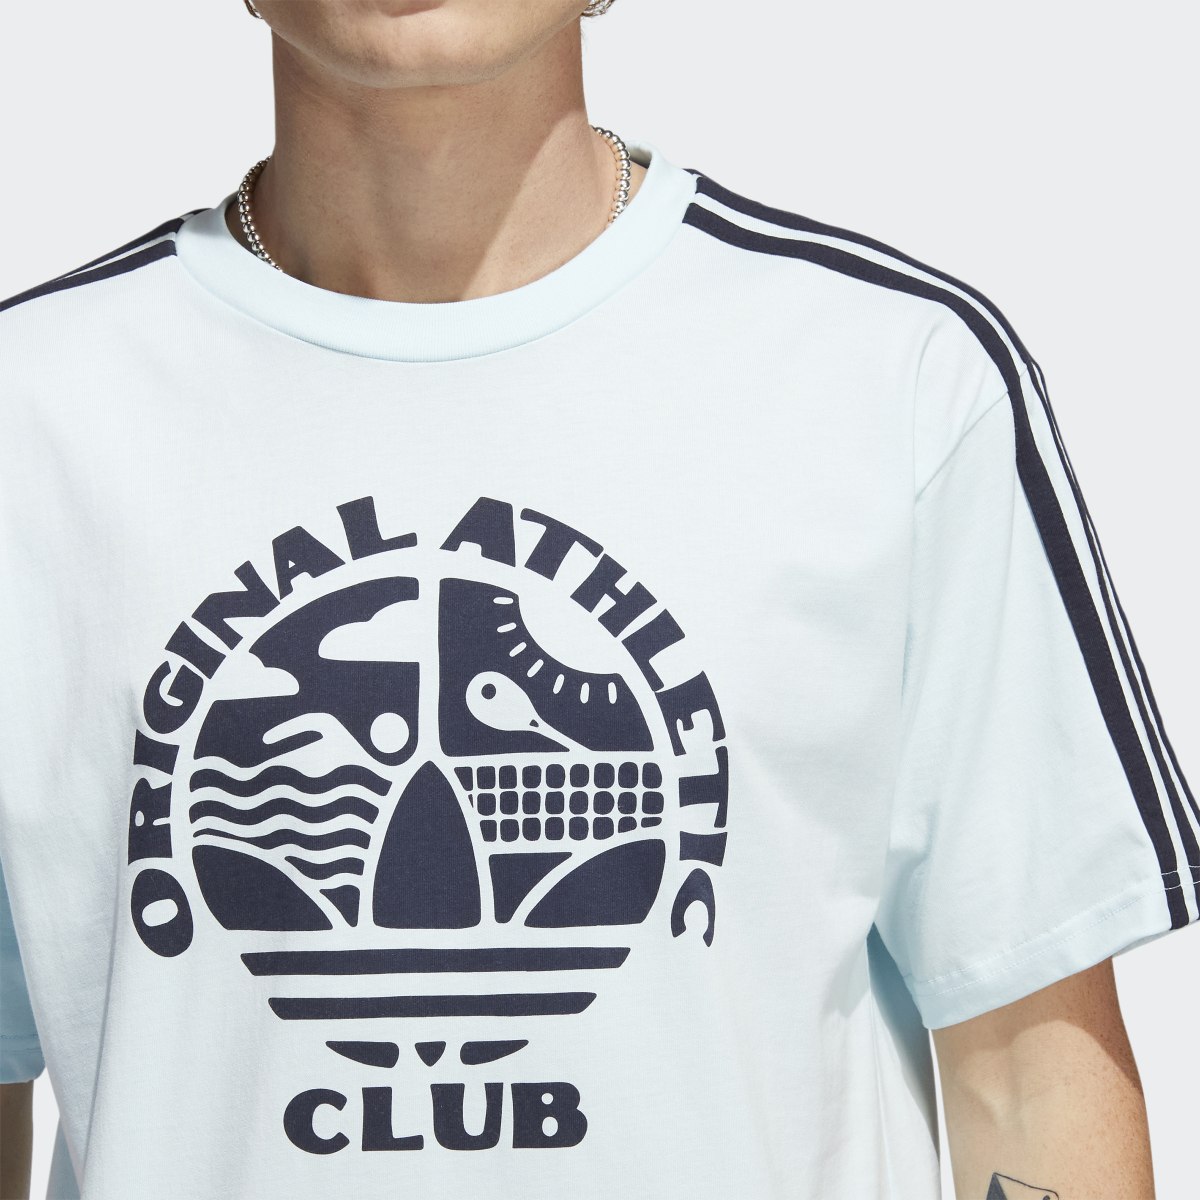 Adidas Original Athletic Club 3-Stripes T-Shirt. 6